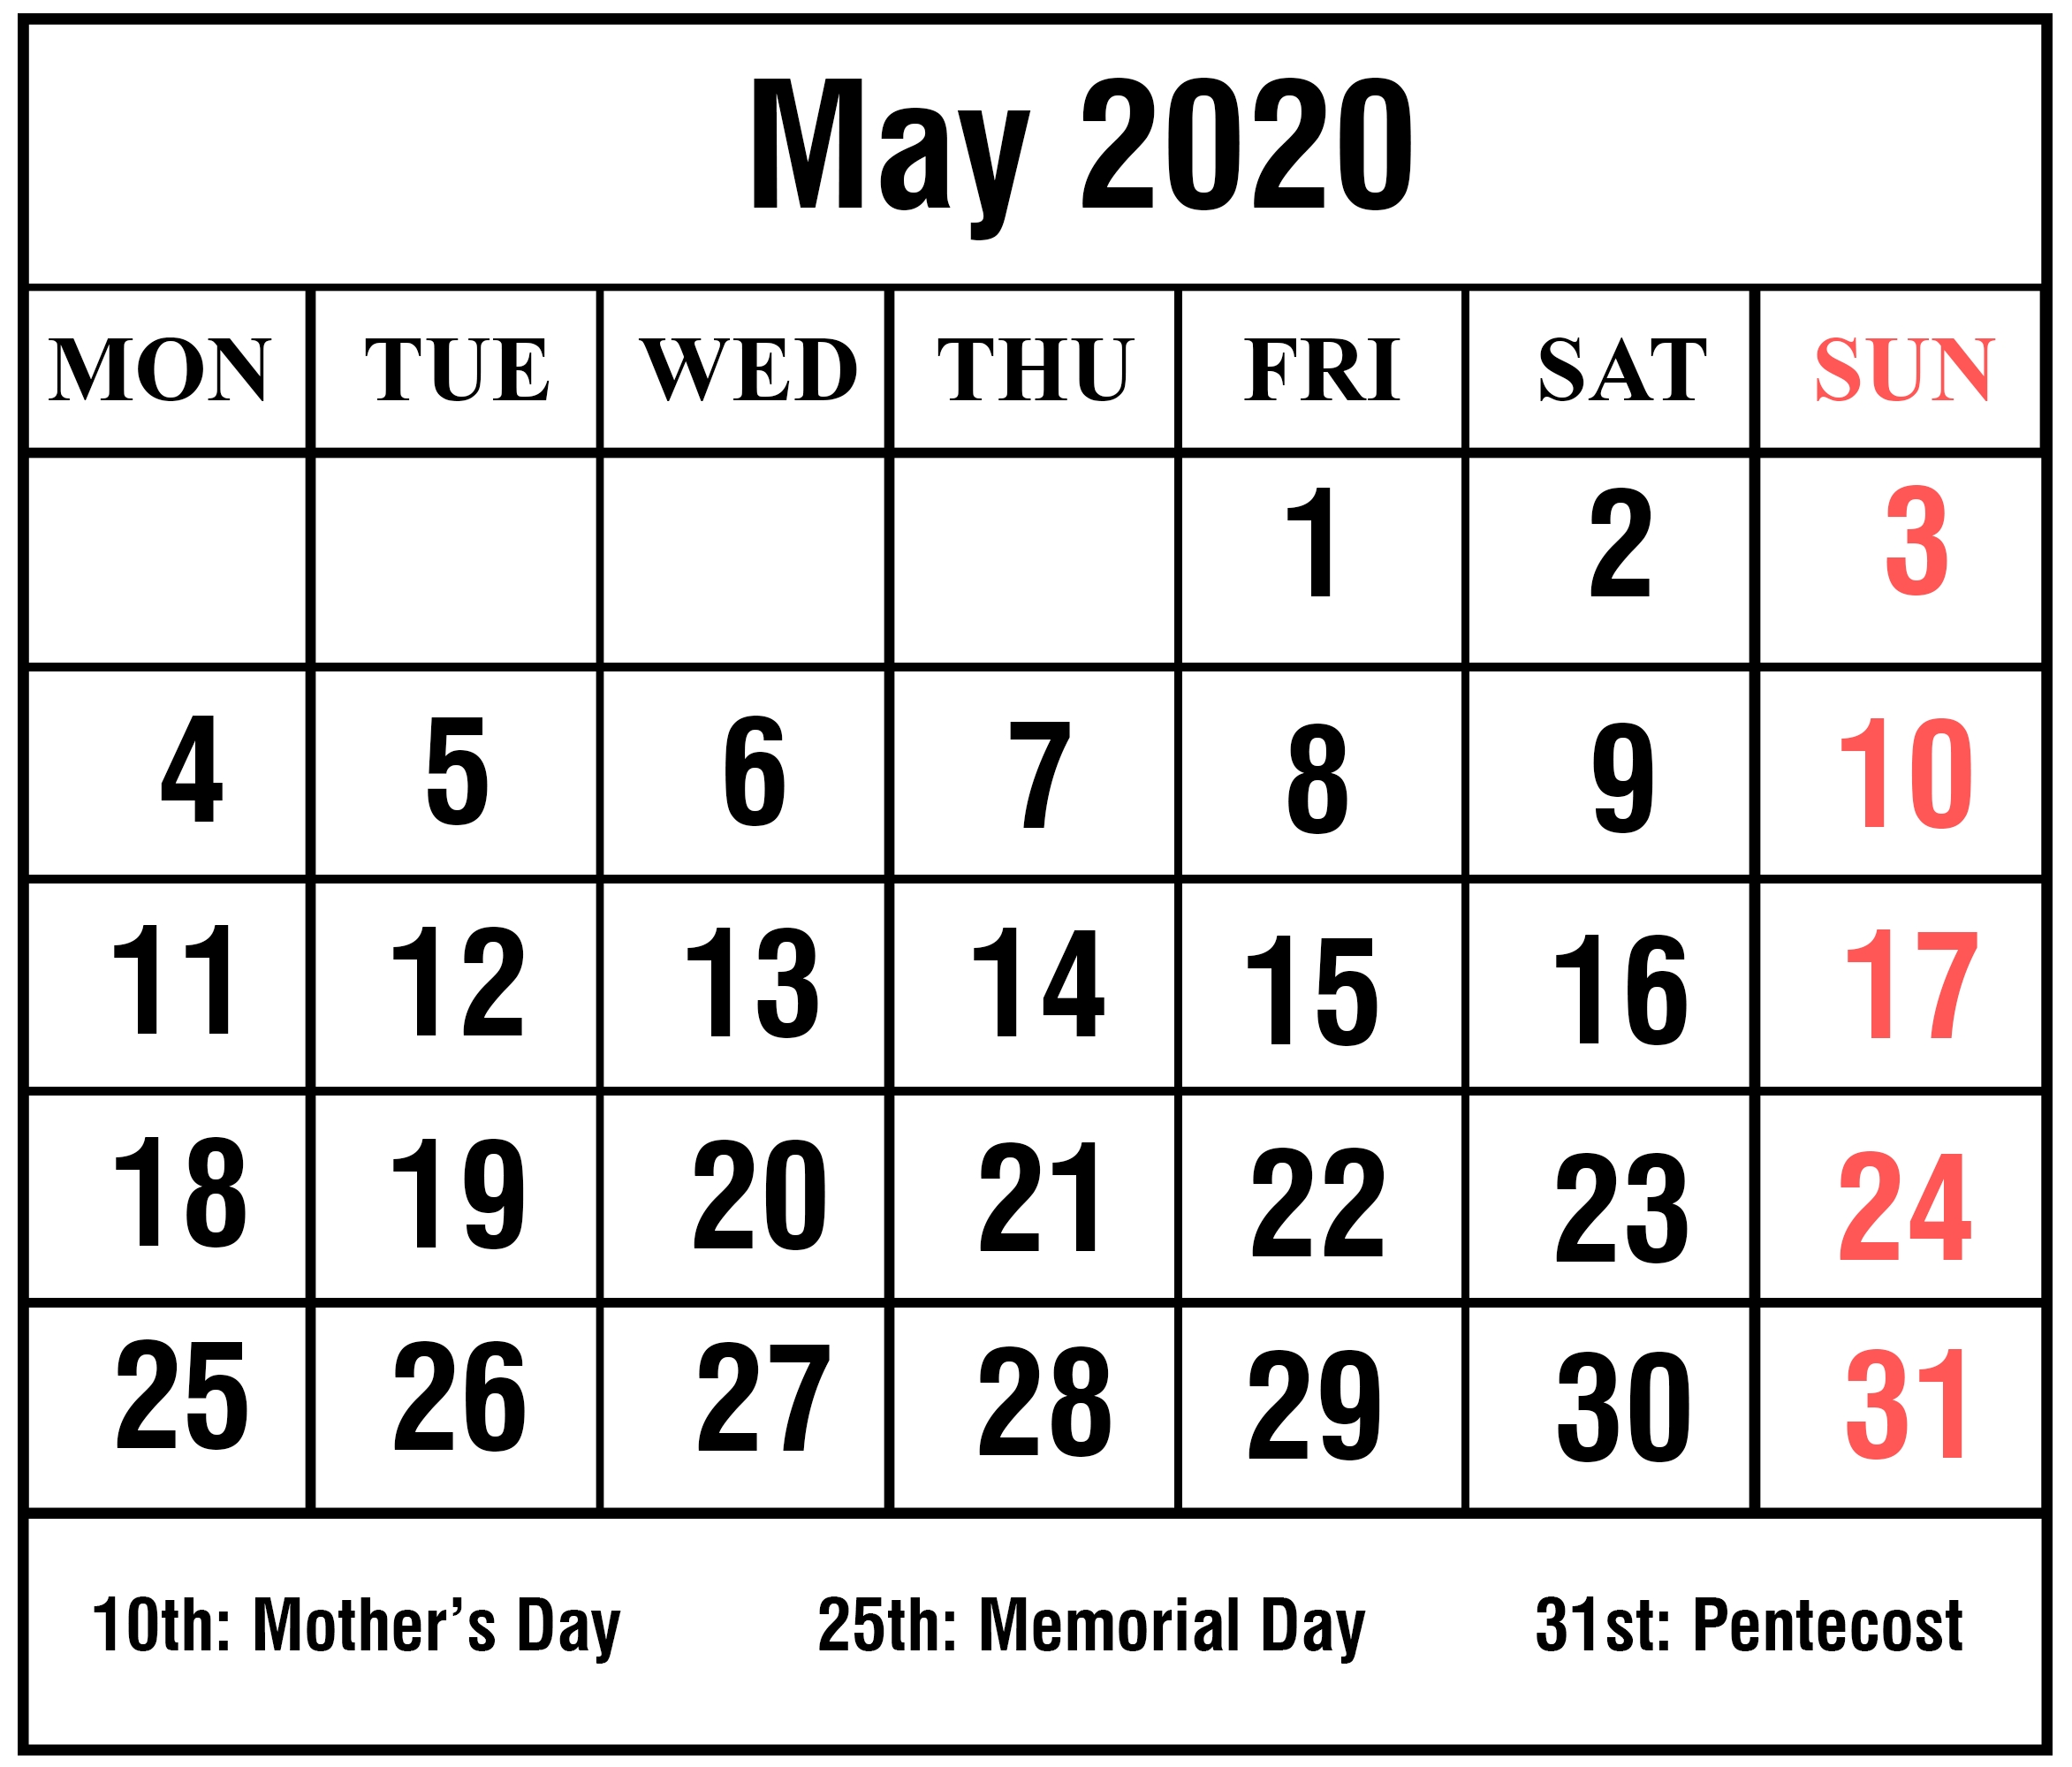 May 2020 Calendar Wallpapers - Top Free May 2020 Calendar Perky May 1 2020 Calendar